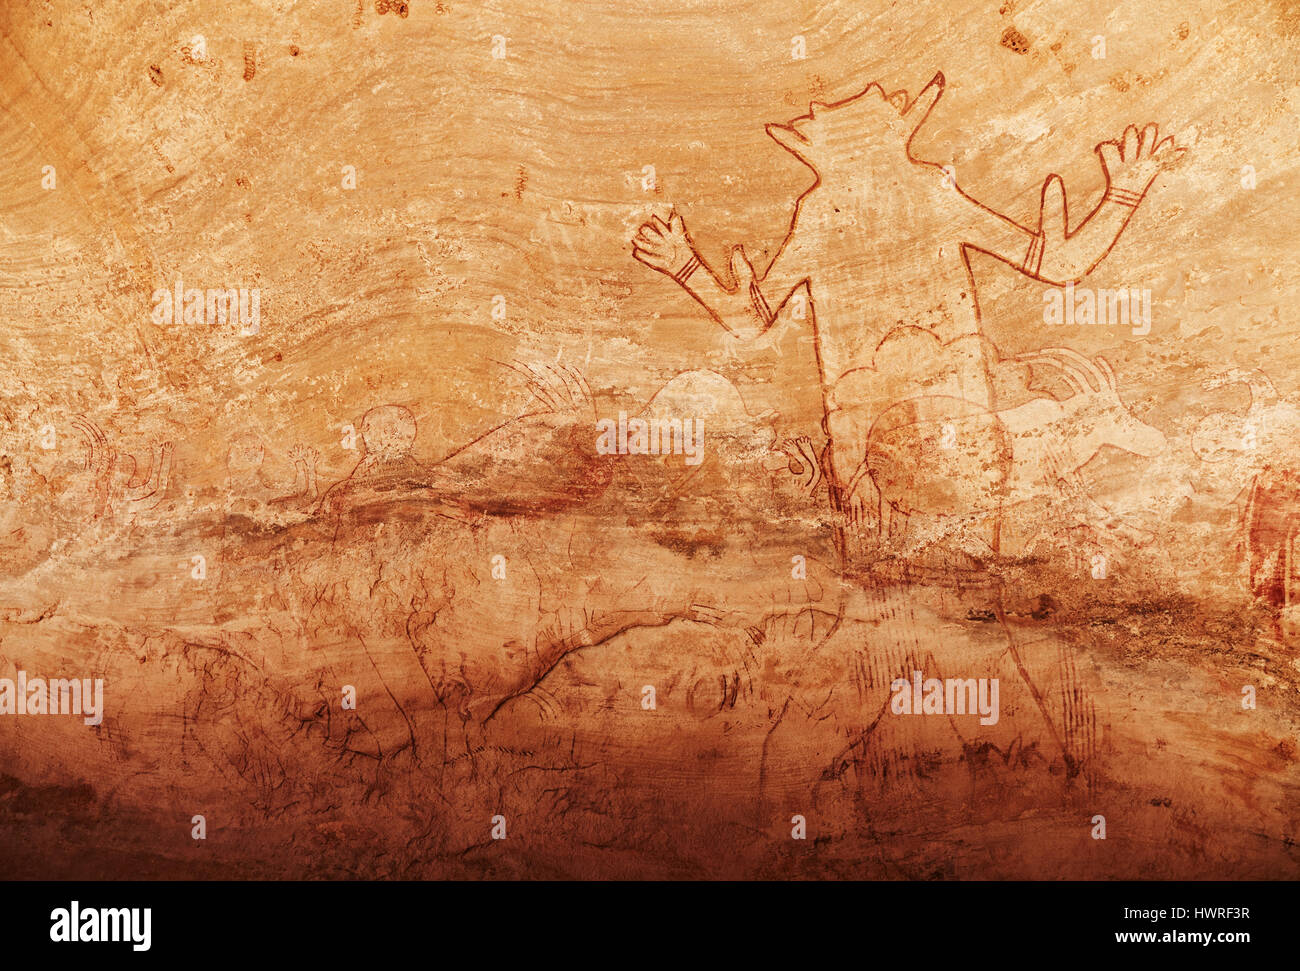 Célèbre grand dieu de la société l'une des plus anciennes peintures rupestres du Sahara, Tassili N'Ajjer, Algérie Banque D'Images